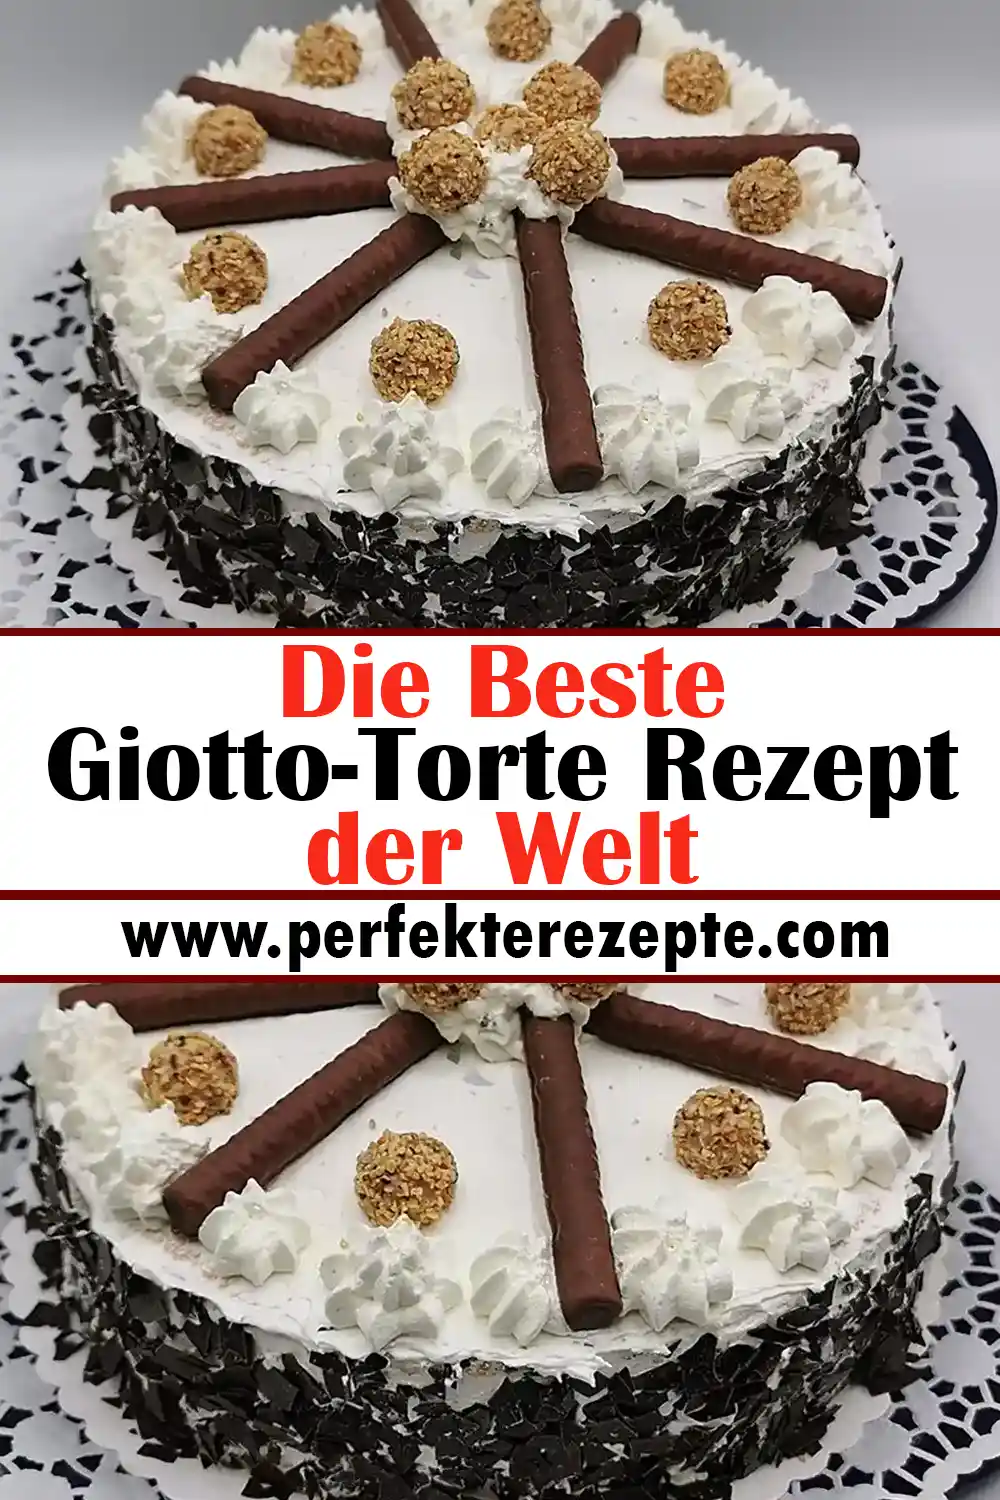 Die Beste Giotto-Torte Rezept der Welt